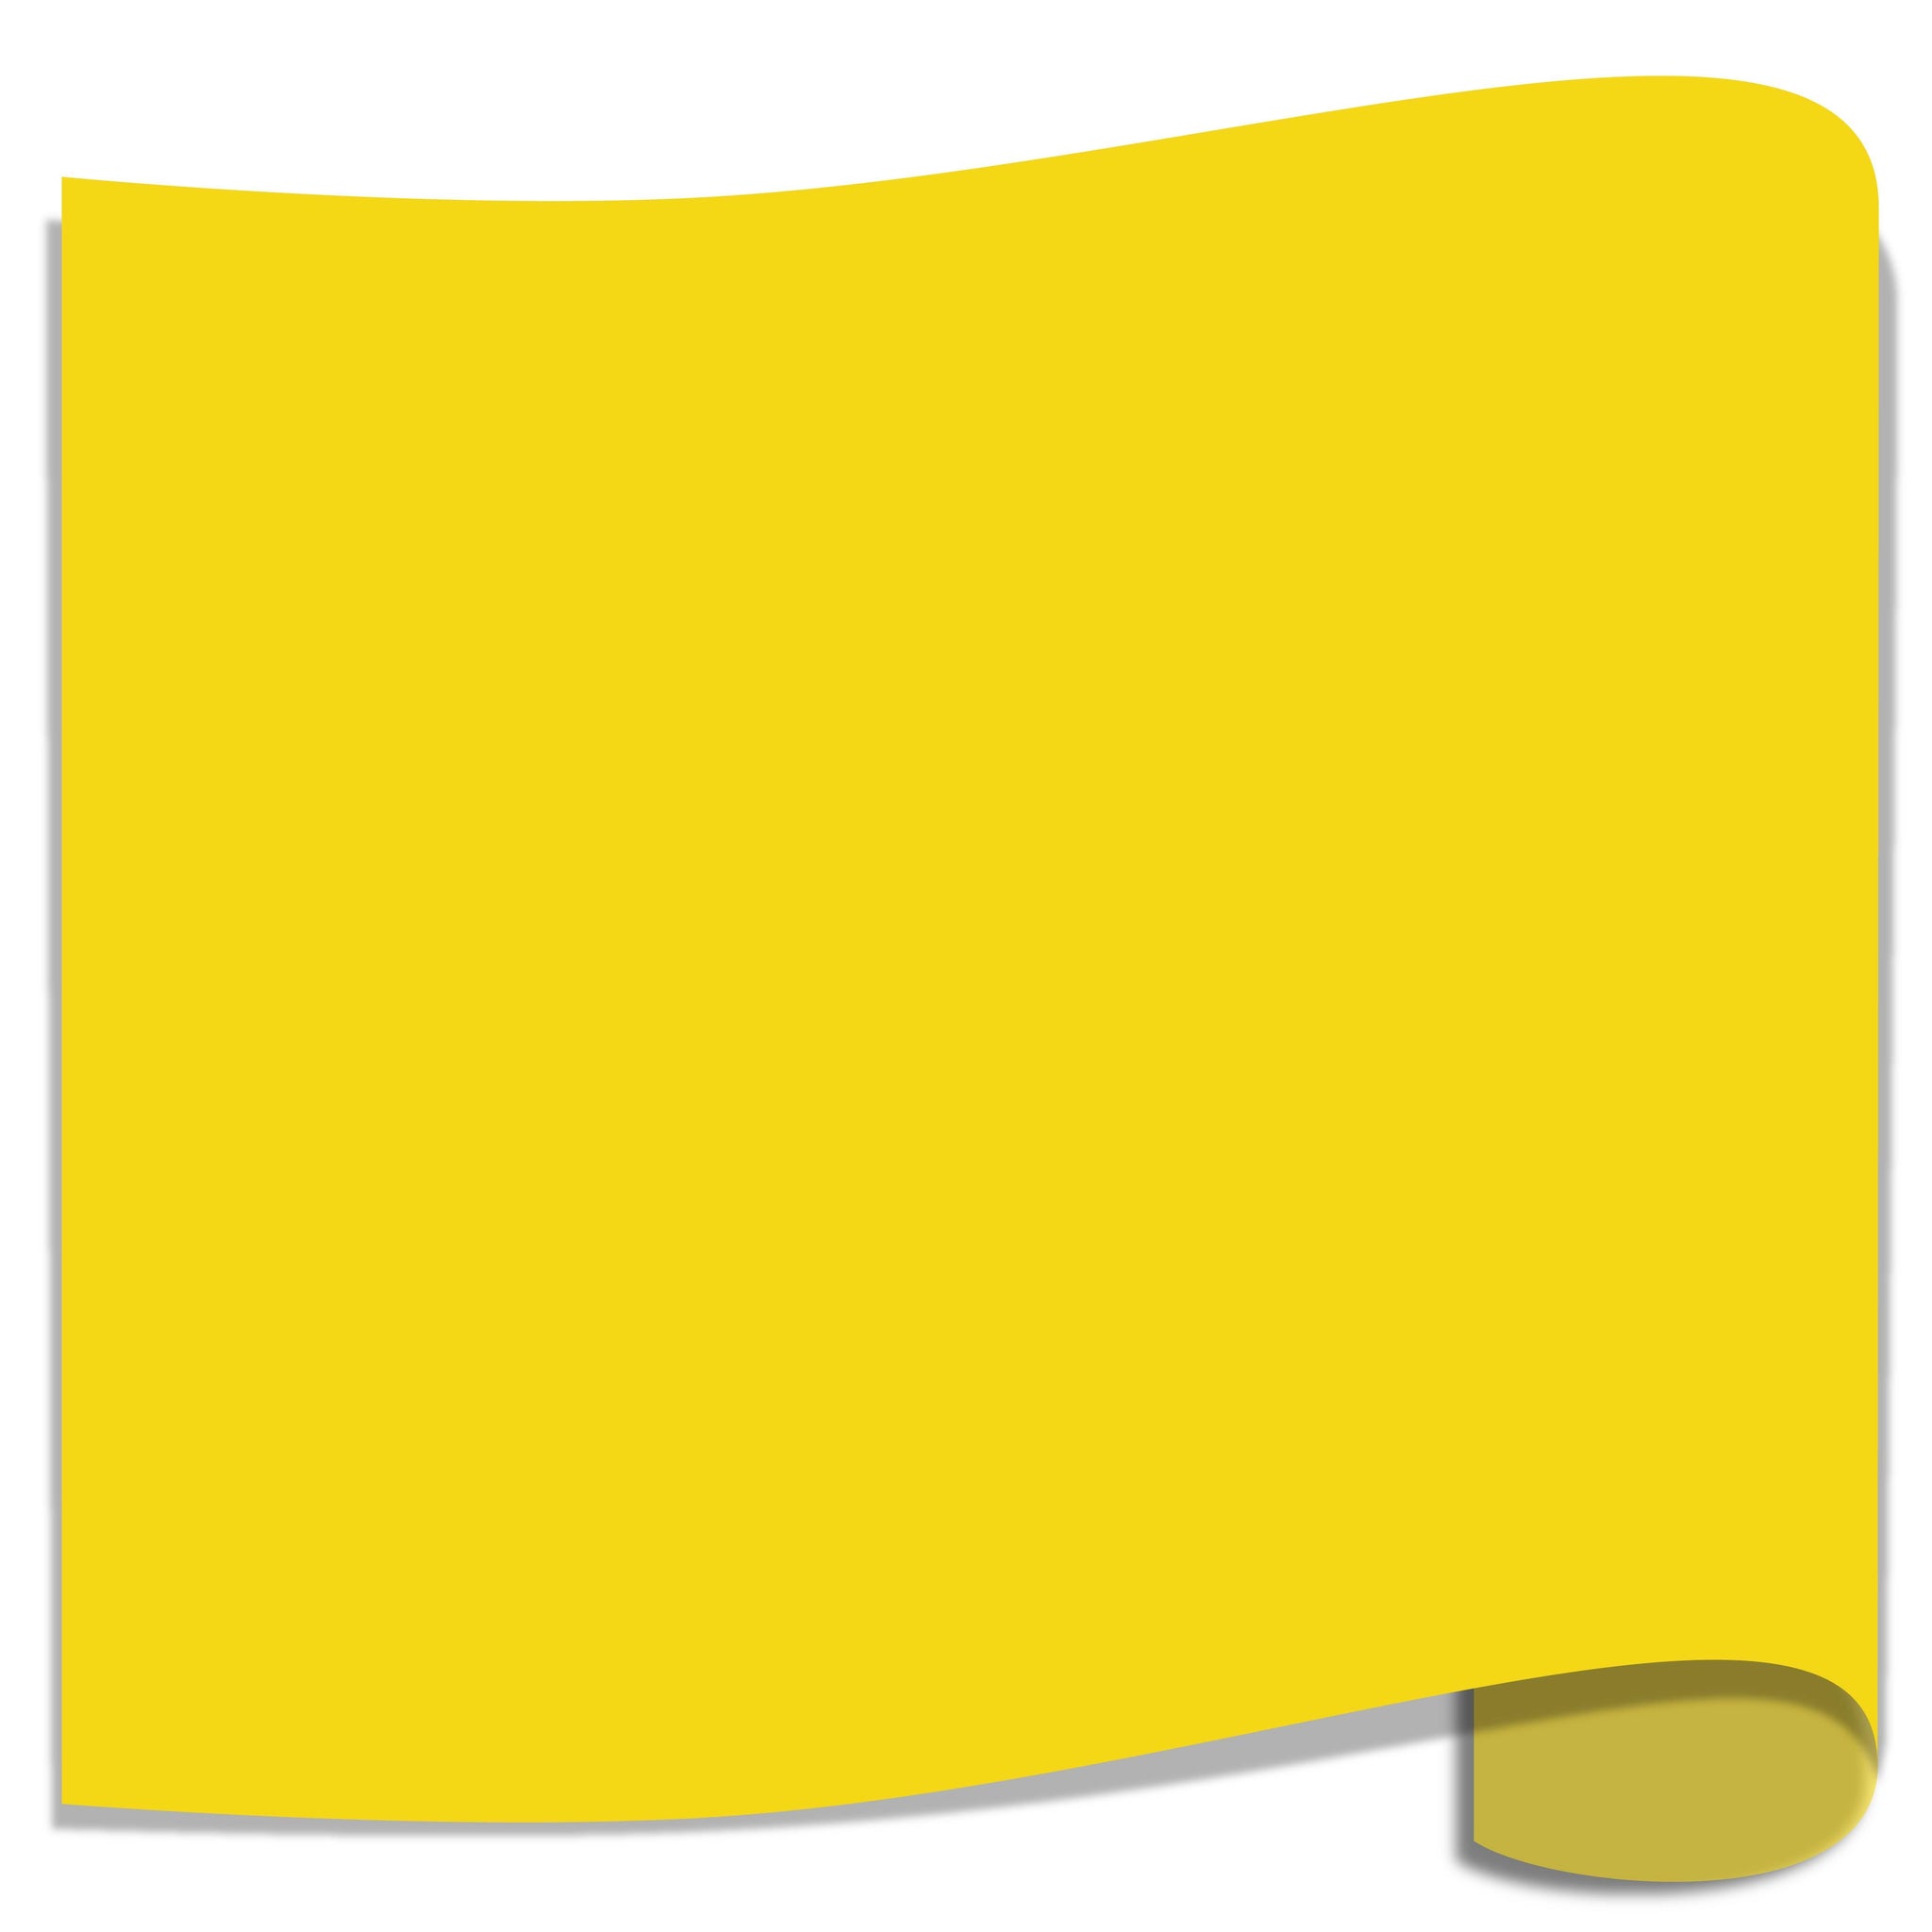 Siser EasyWeed Heat Transfer Vinyl (HTV) - Lemon Yellow - 12 in x 12 inch Sheet